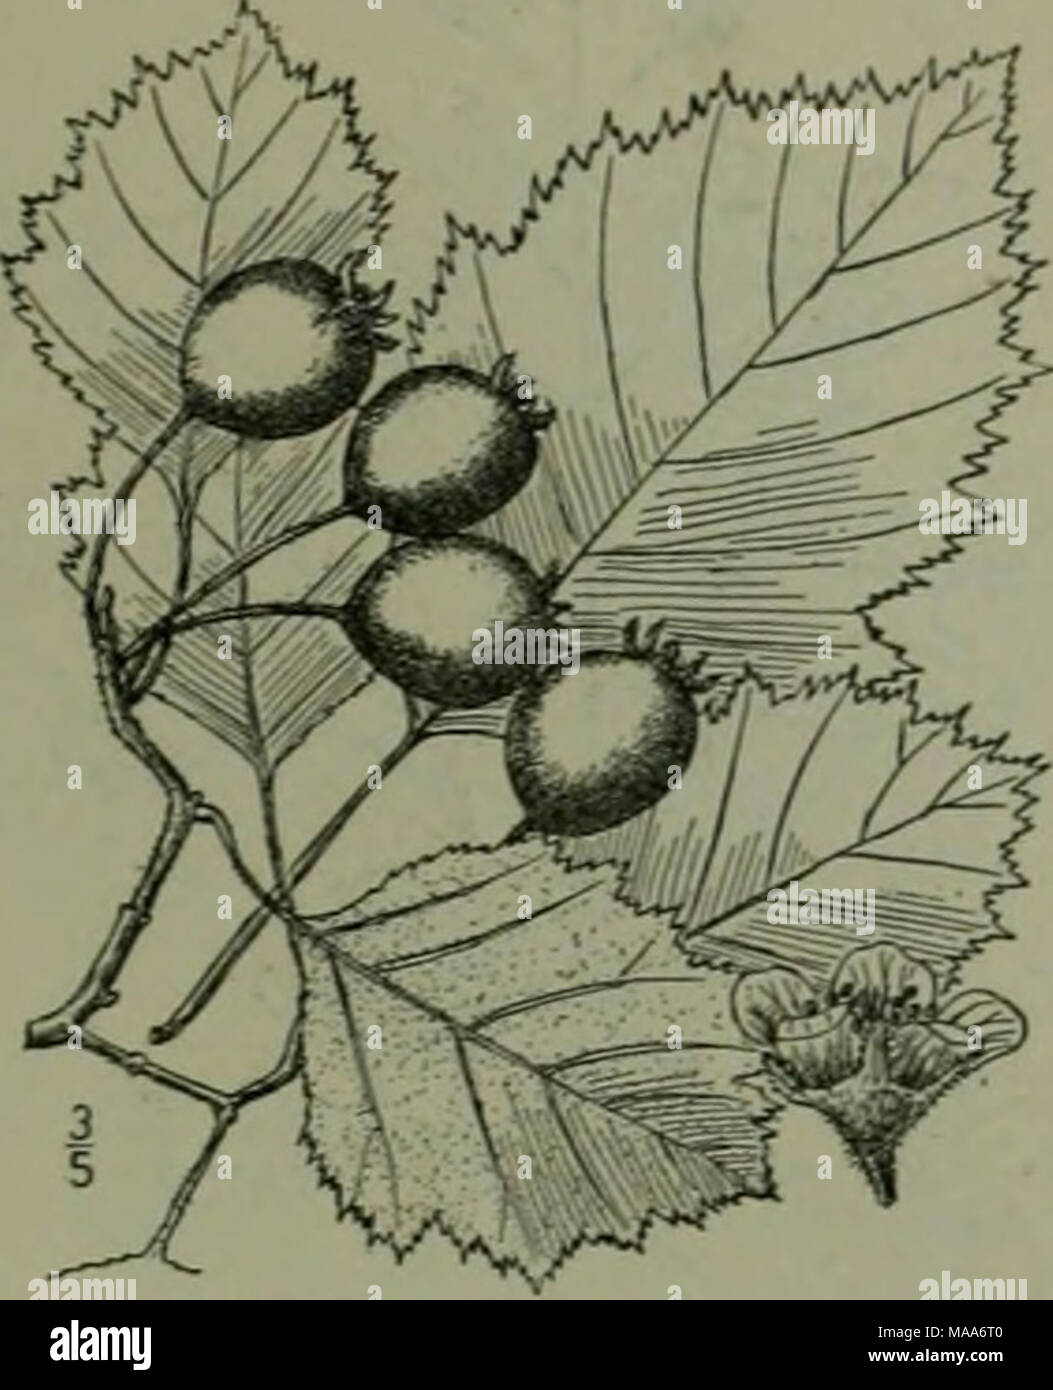 Laminas botanicas arbol fotografías e imágenes de alta resolución - Alamy